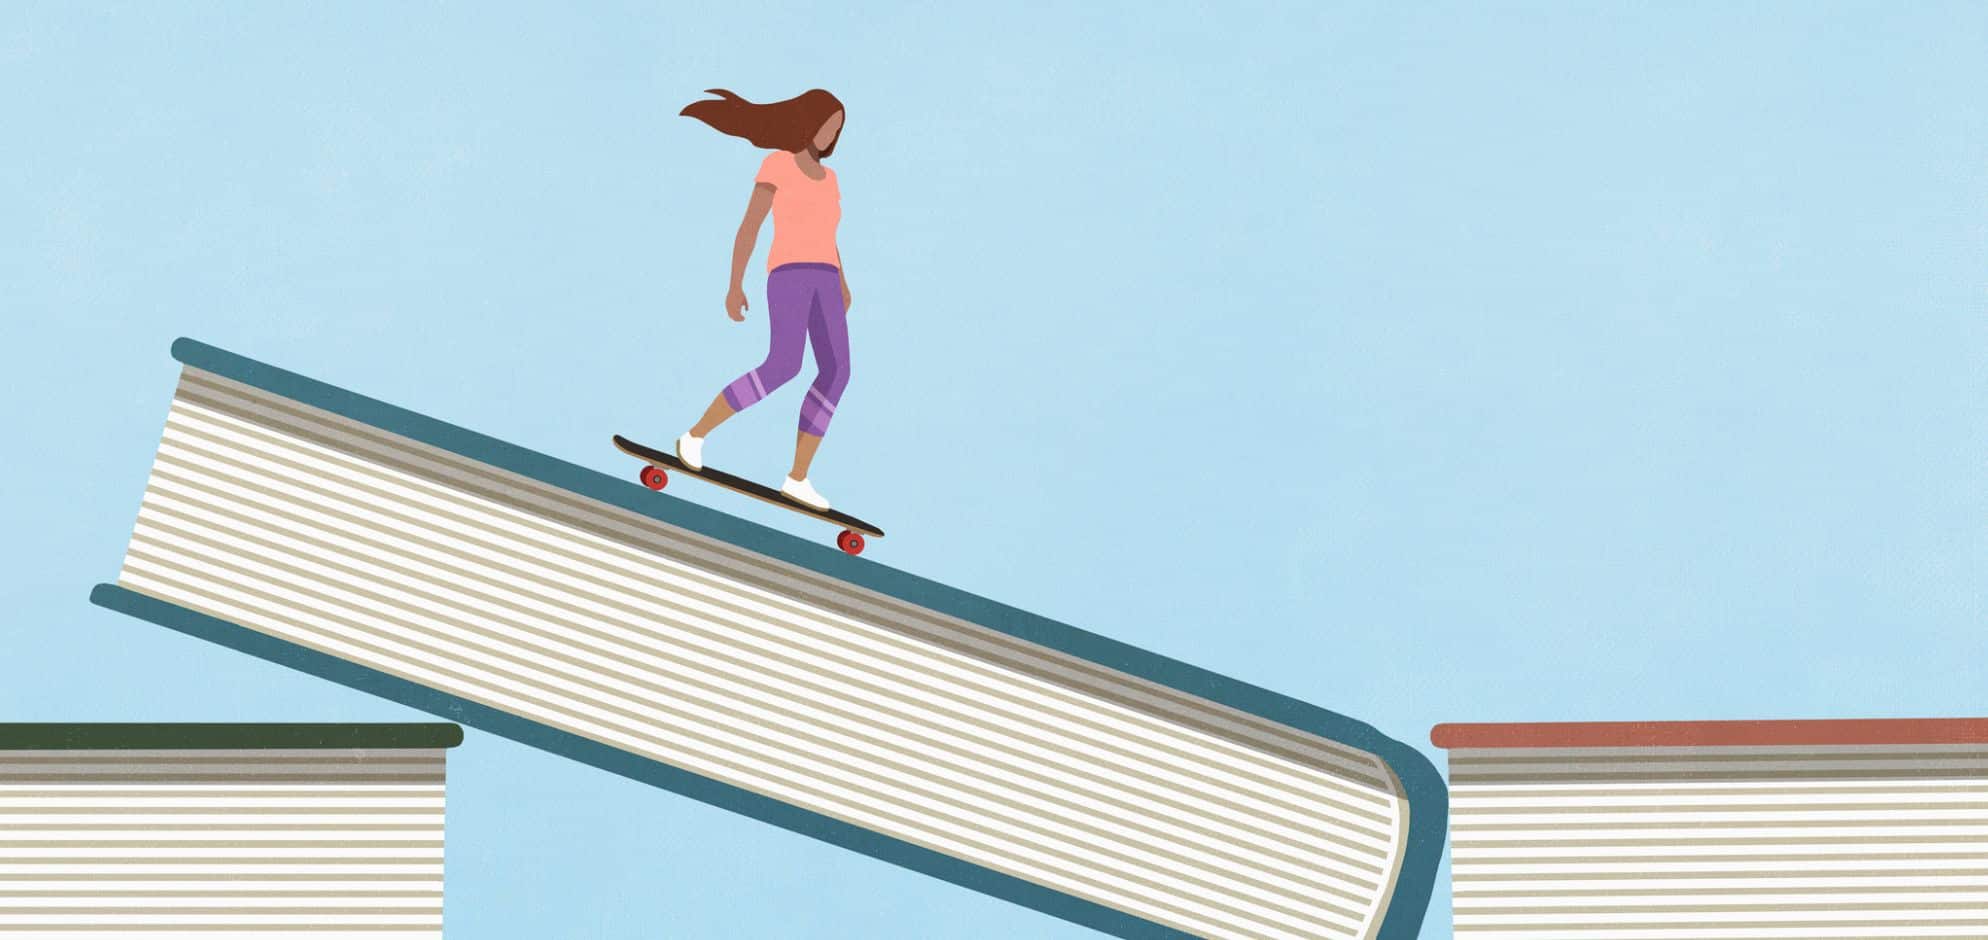 Grafik: Junge Frau fährt Skateboard auf riesigen Büchern